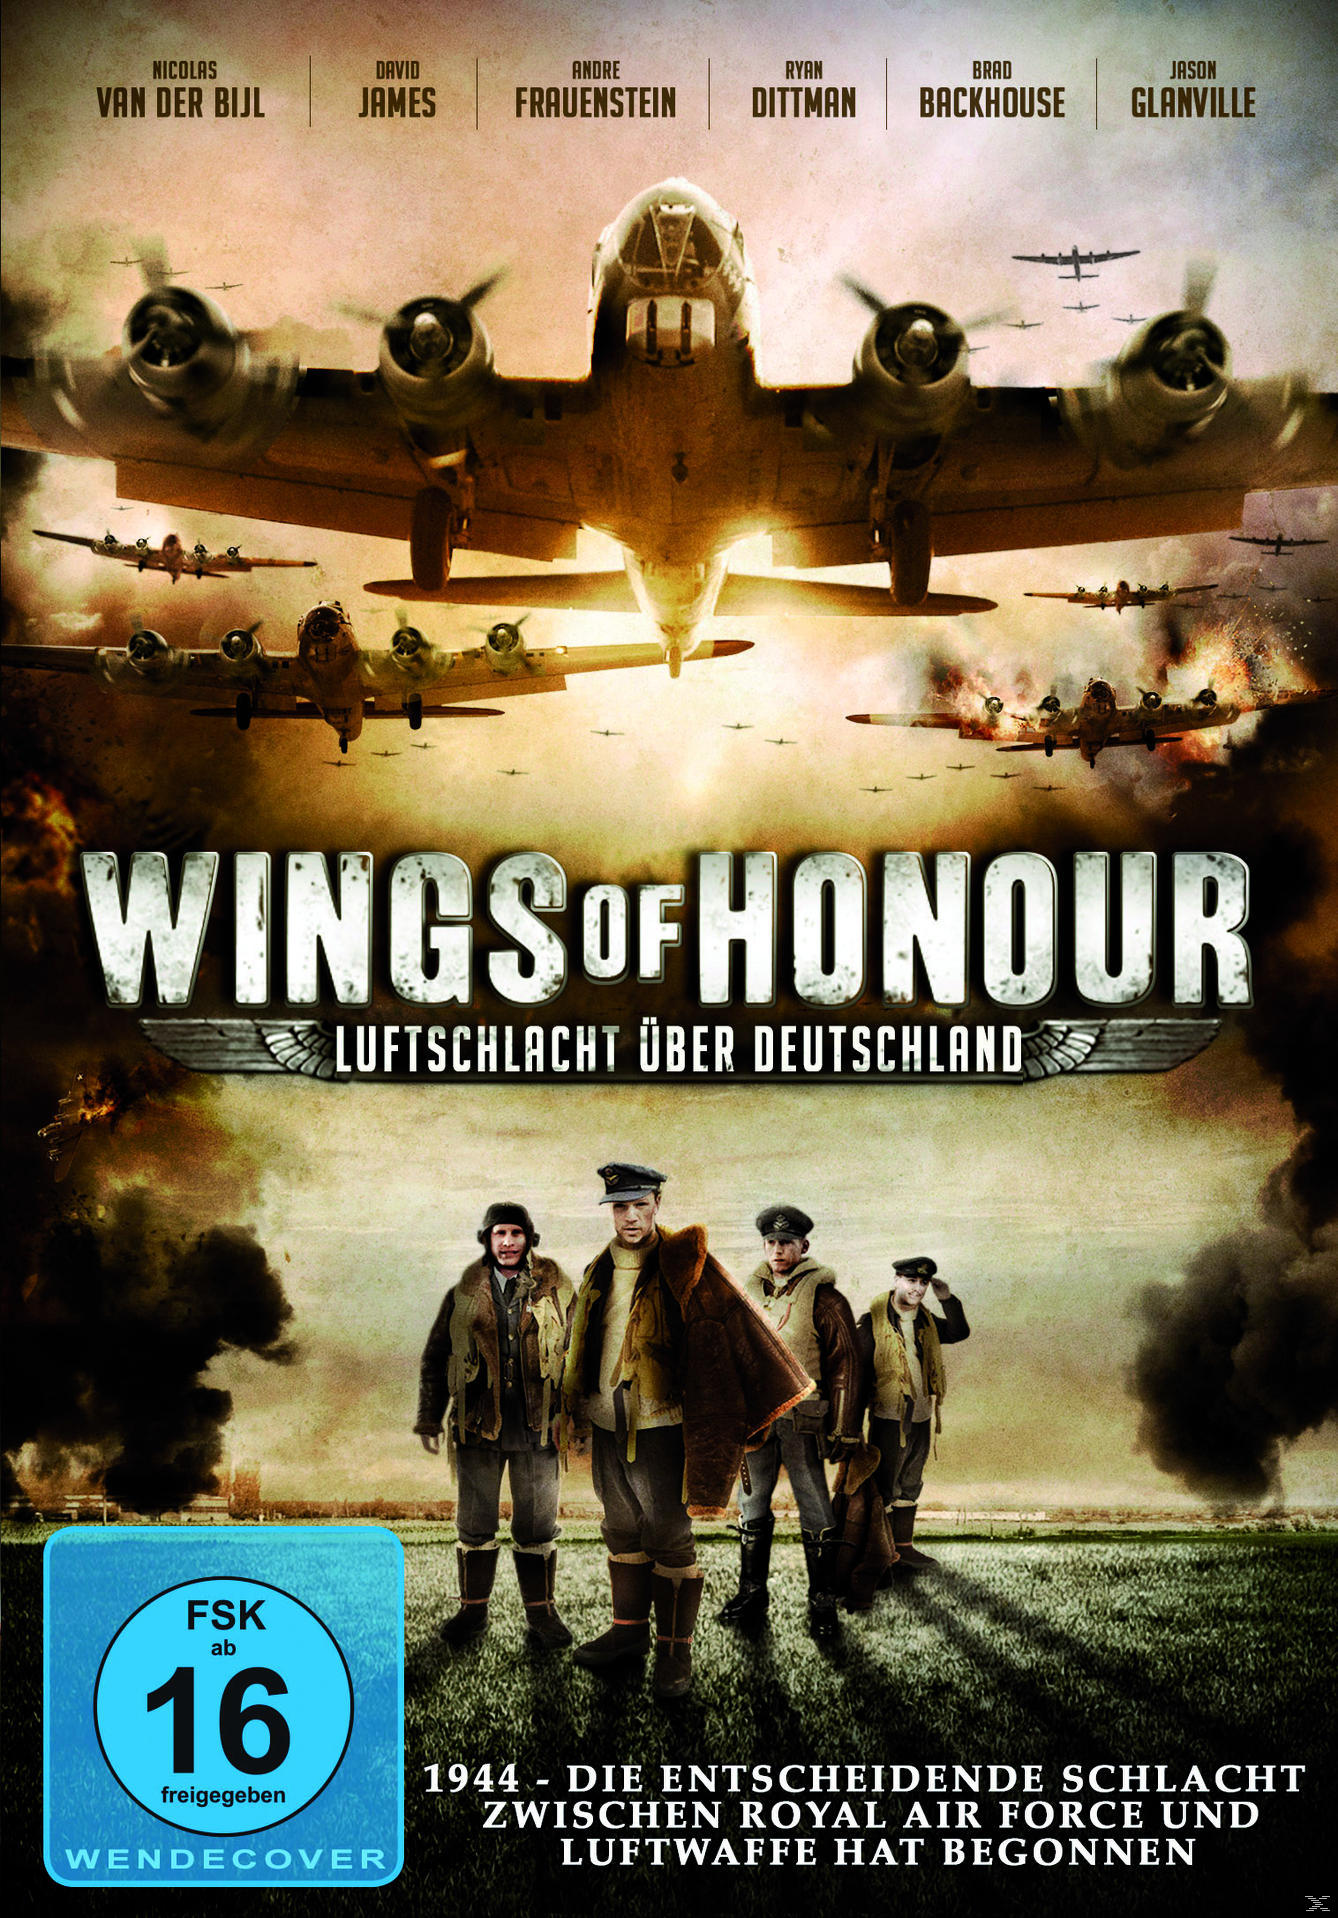 Wings of Honour DVD Deutschland – Luftschlacht über